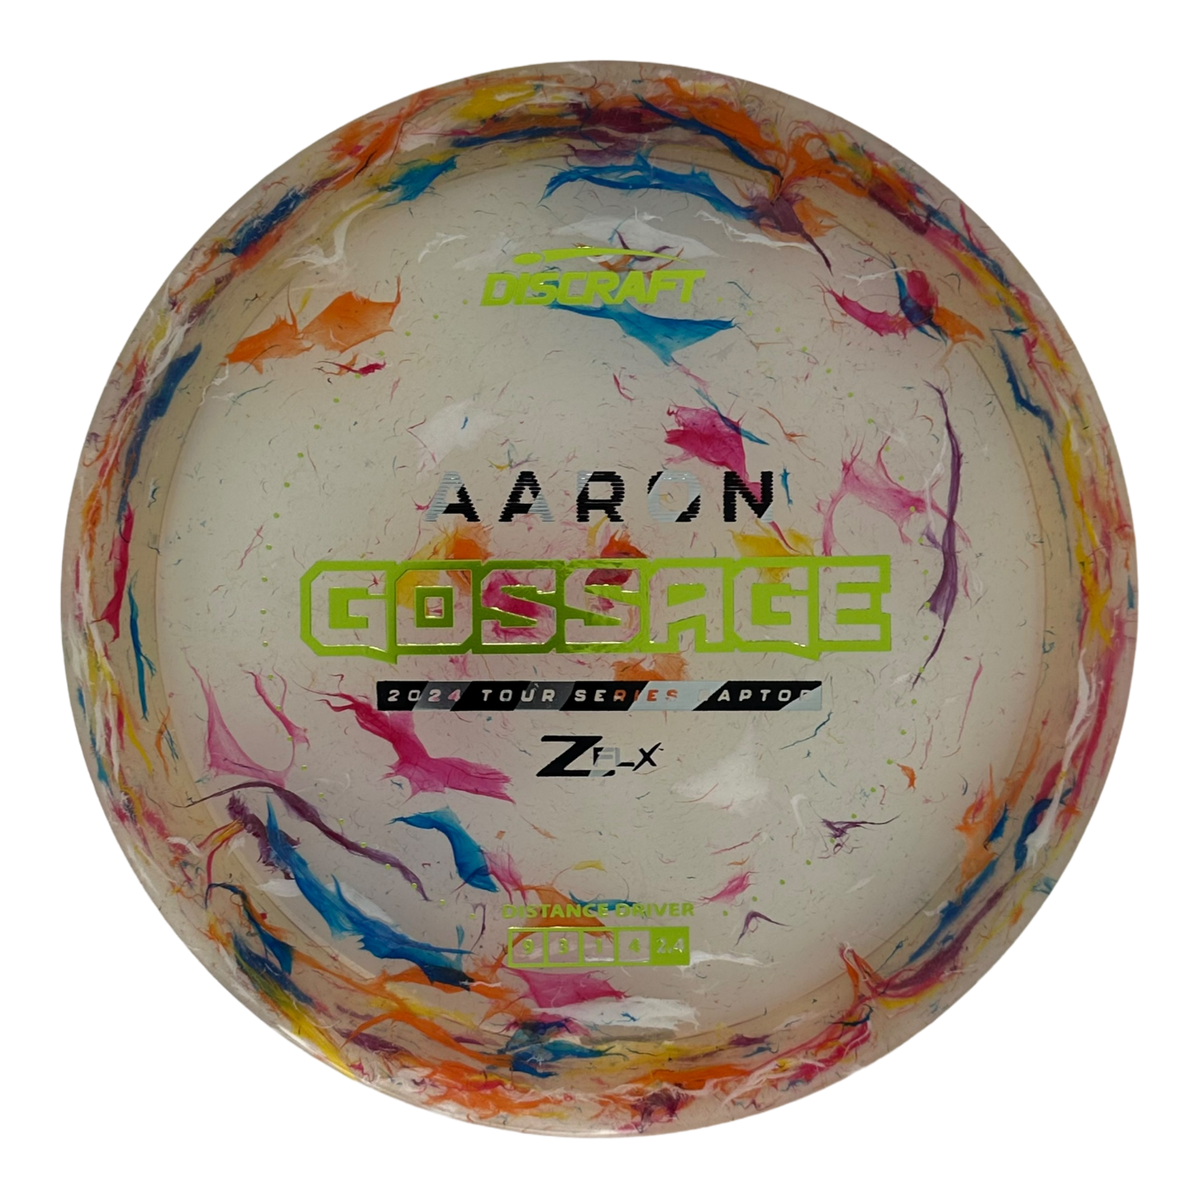 Discraft Jawbreaker Z FLX Raptor - Aaron Gossage TS (2024)